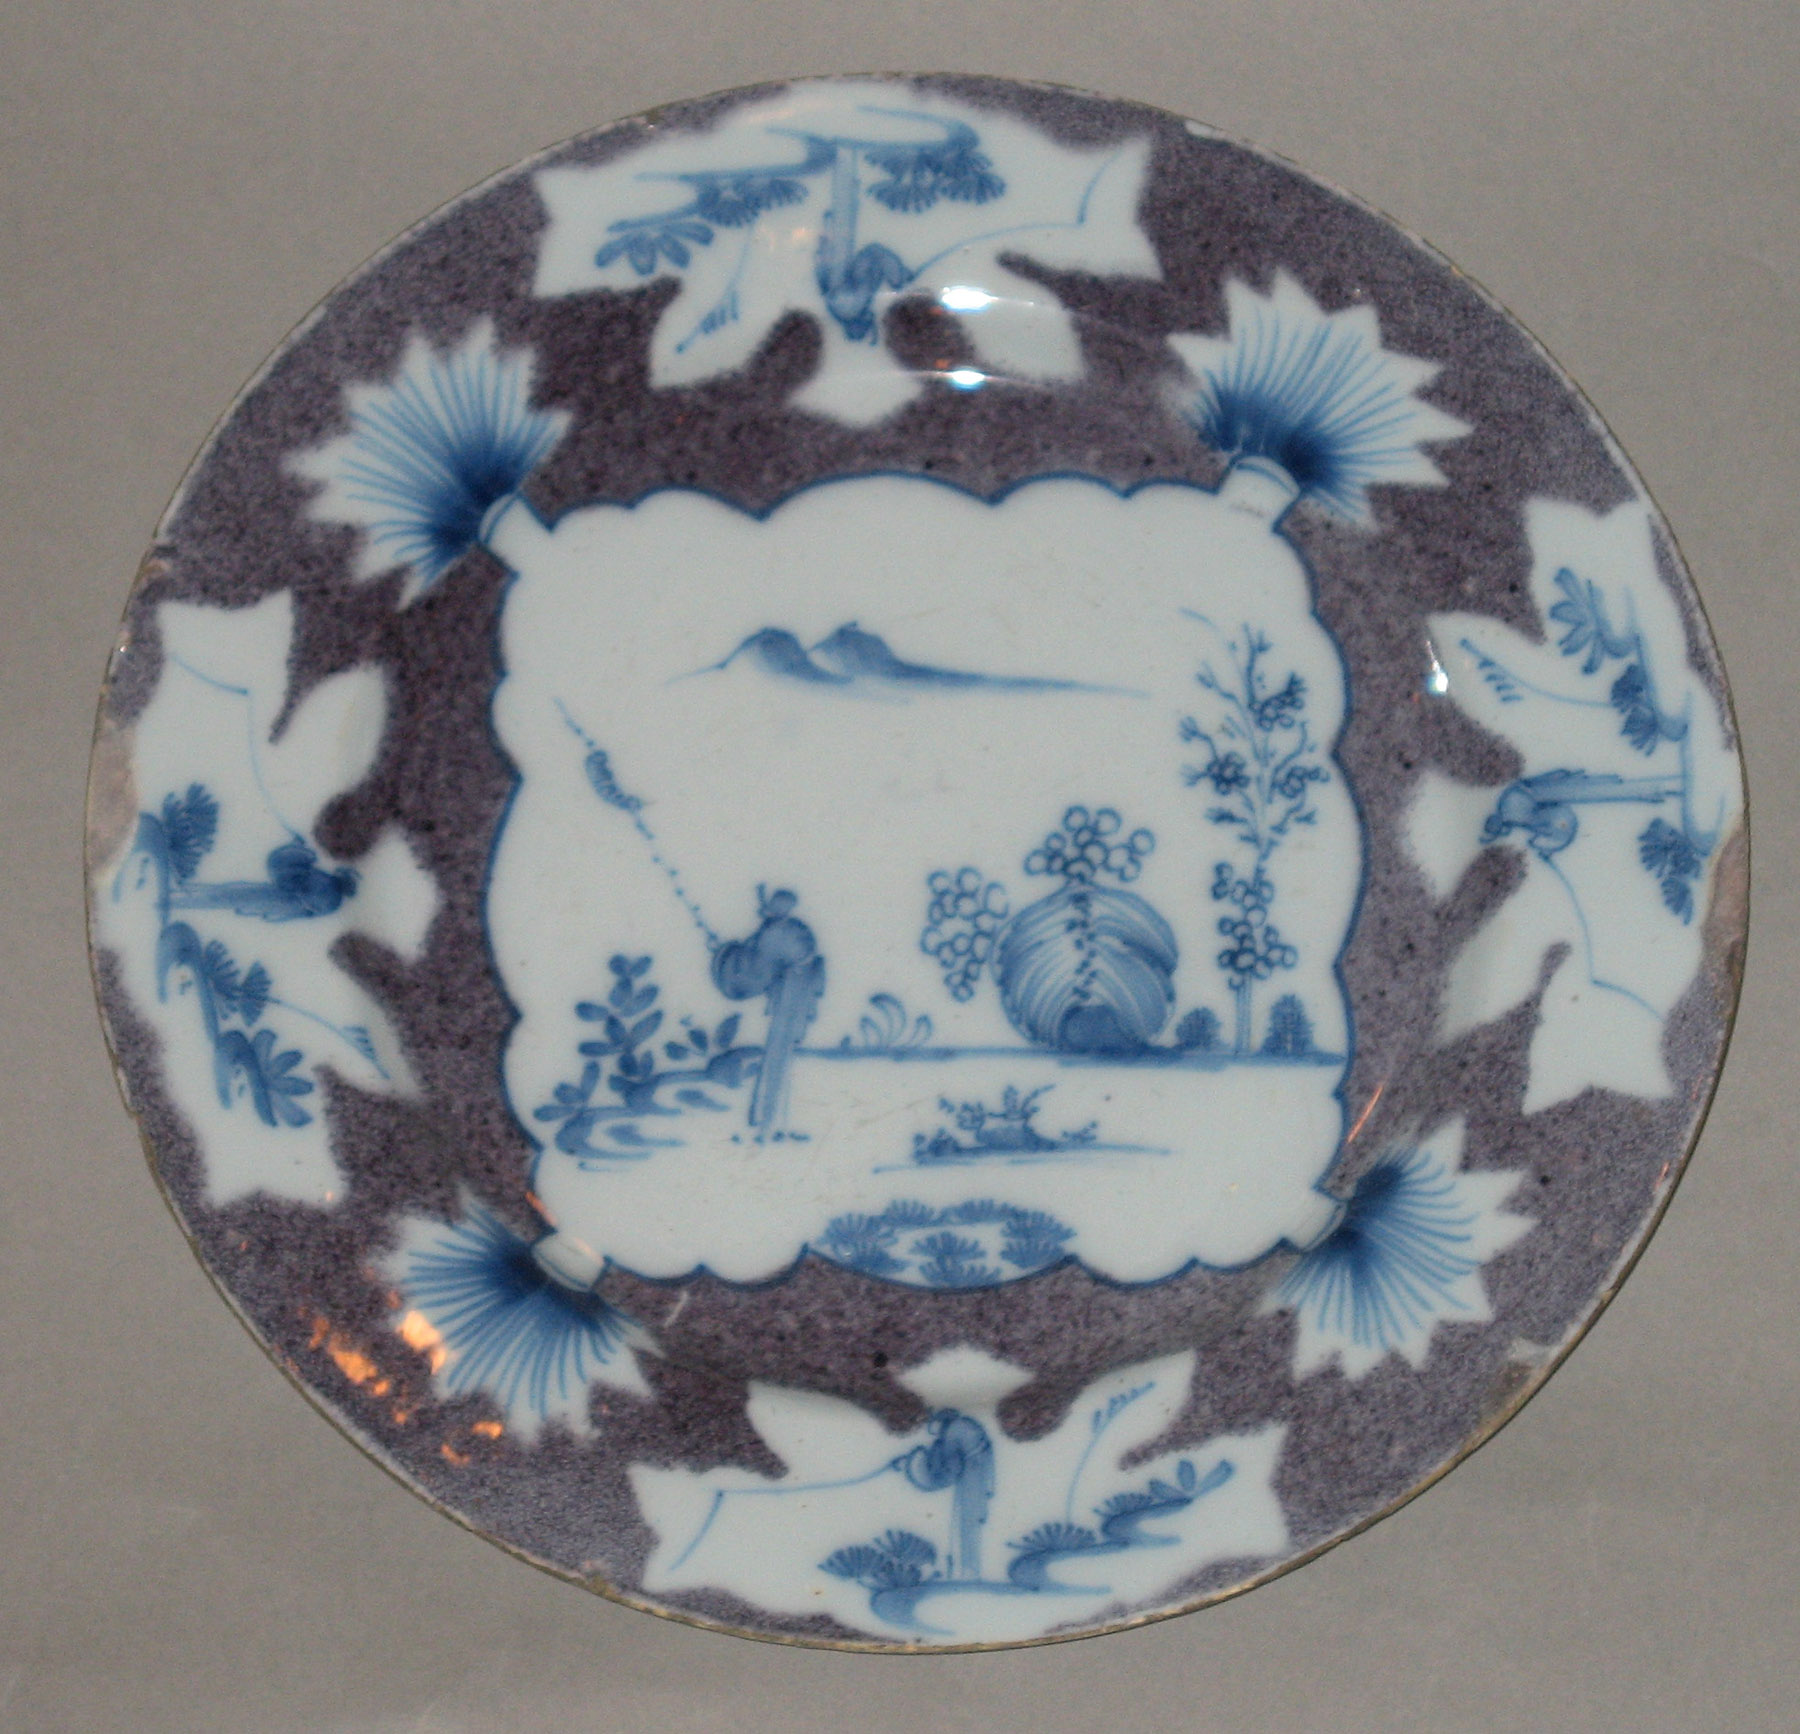 2003.0022.045 Delft plate